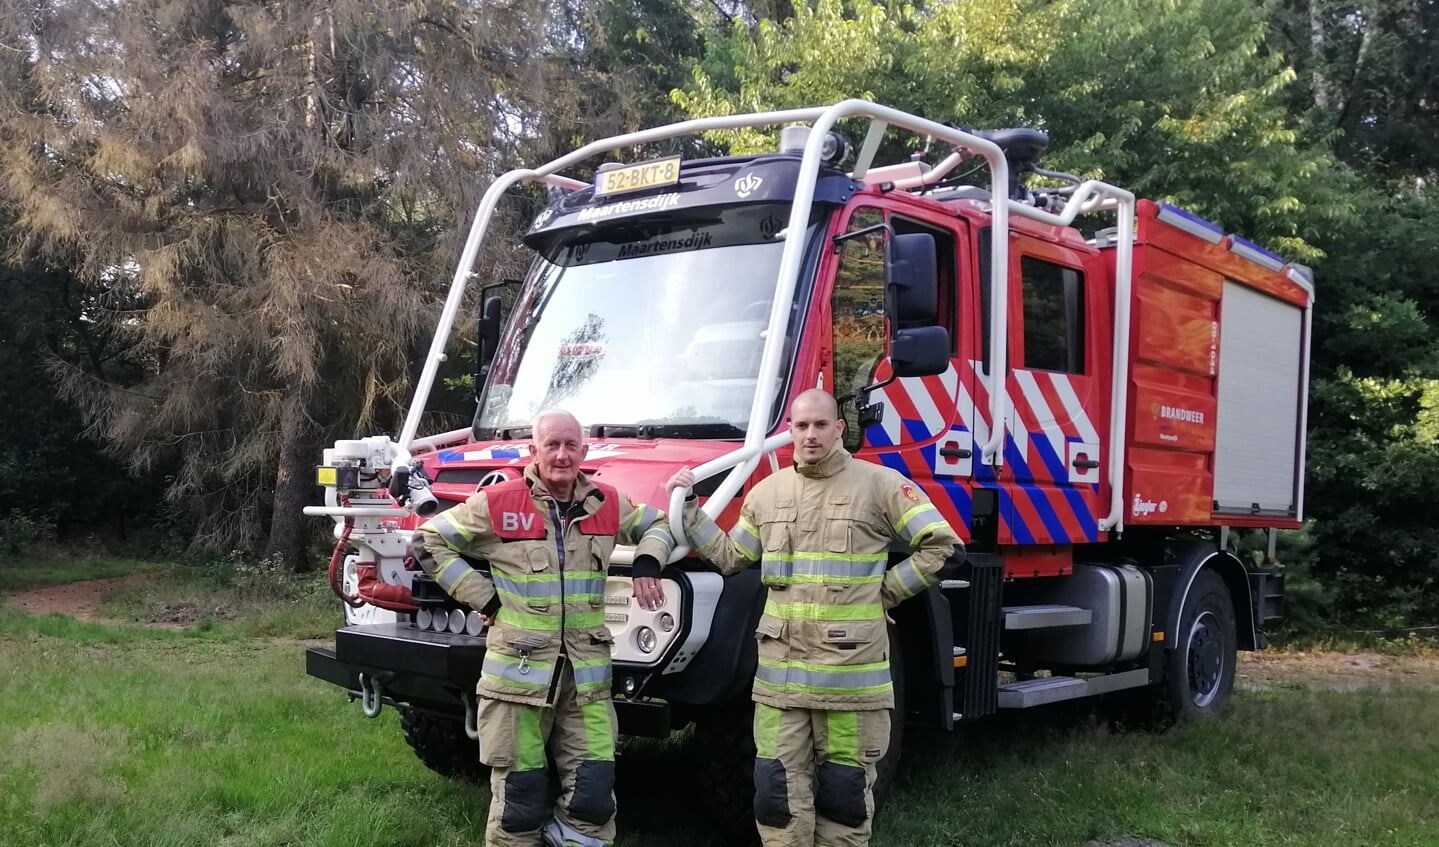 Vader en zoon de Graaf in vol ornaat voor de laatste aanwinst van de Brandweer Maartensdijk. Het voertuig heeft  3000 liter bluswater water en 500 liter voor eigen veiligheid van de manschappen aan boord:.